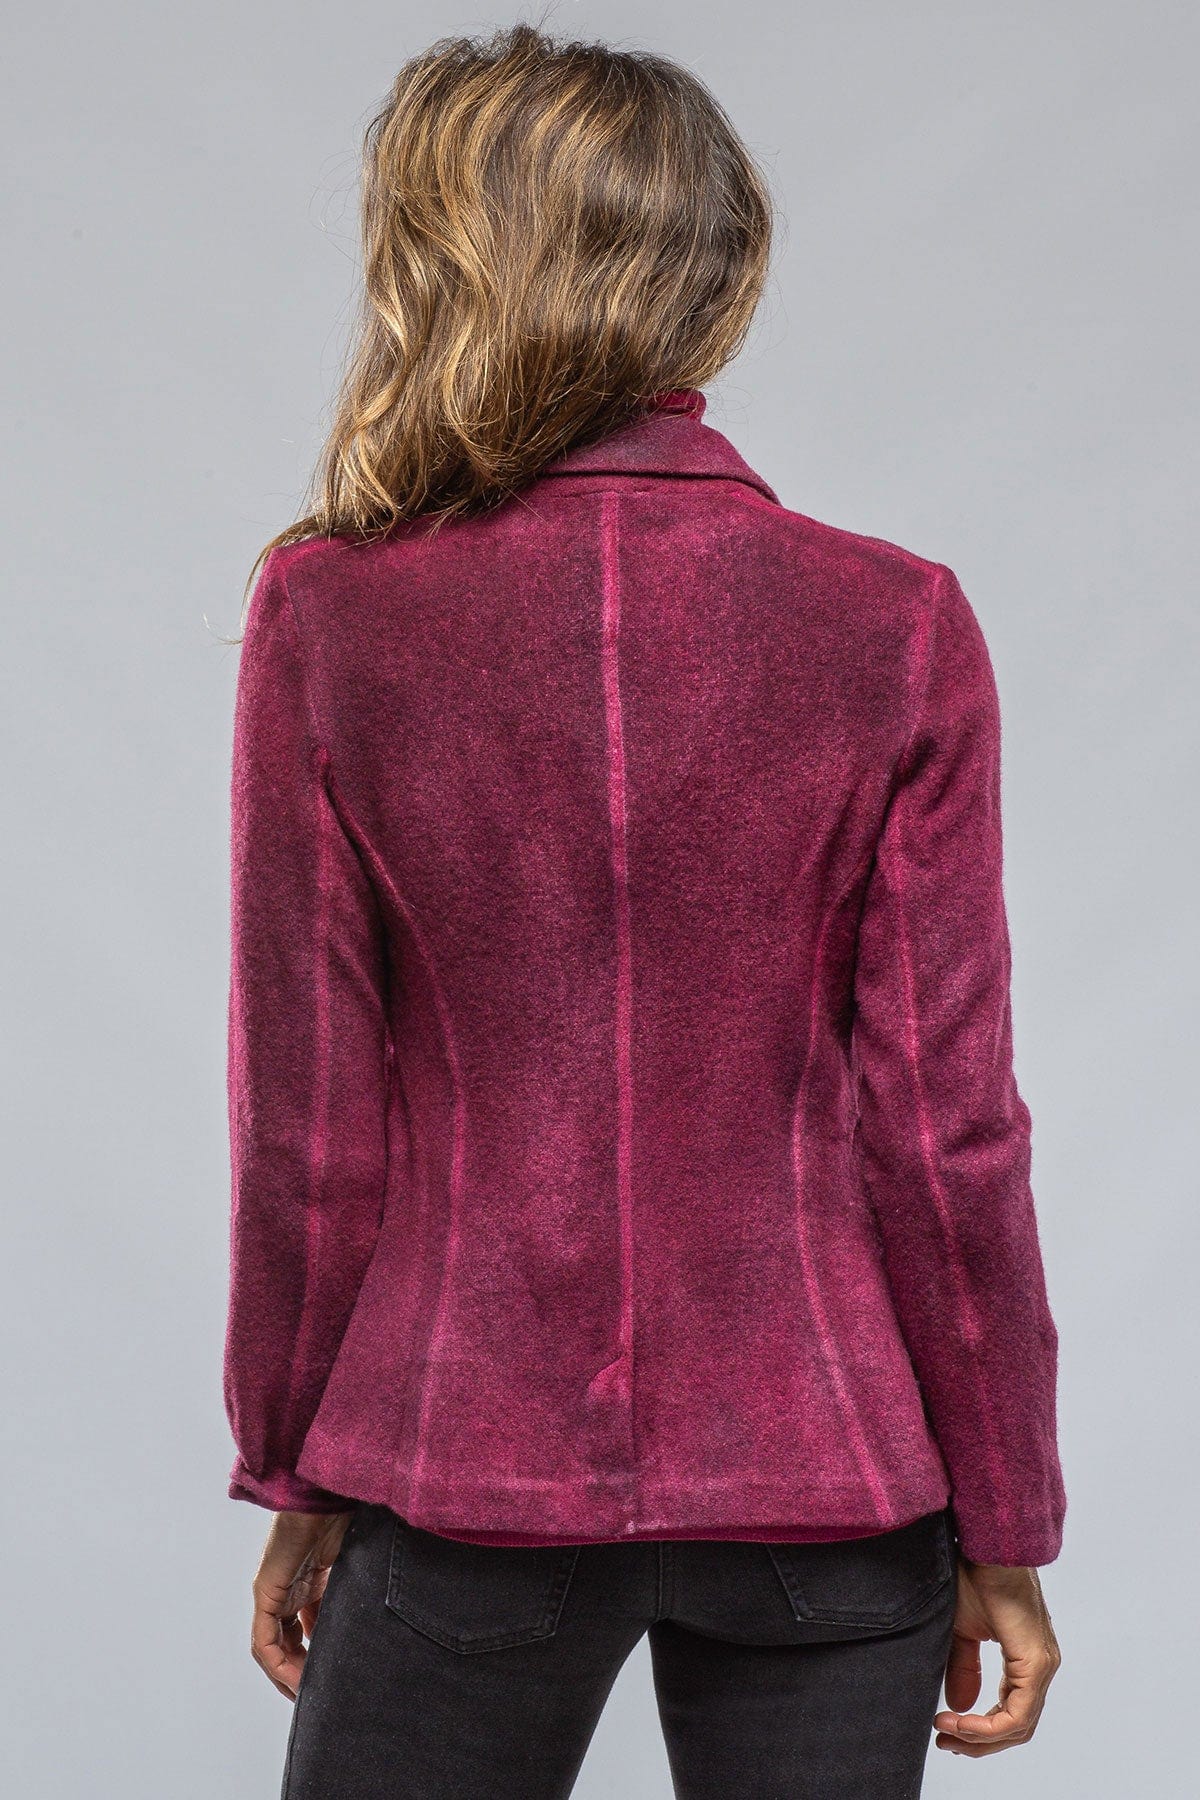 Myra Cashmere Jacket In Dark Cherry - AXEL'S